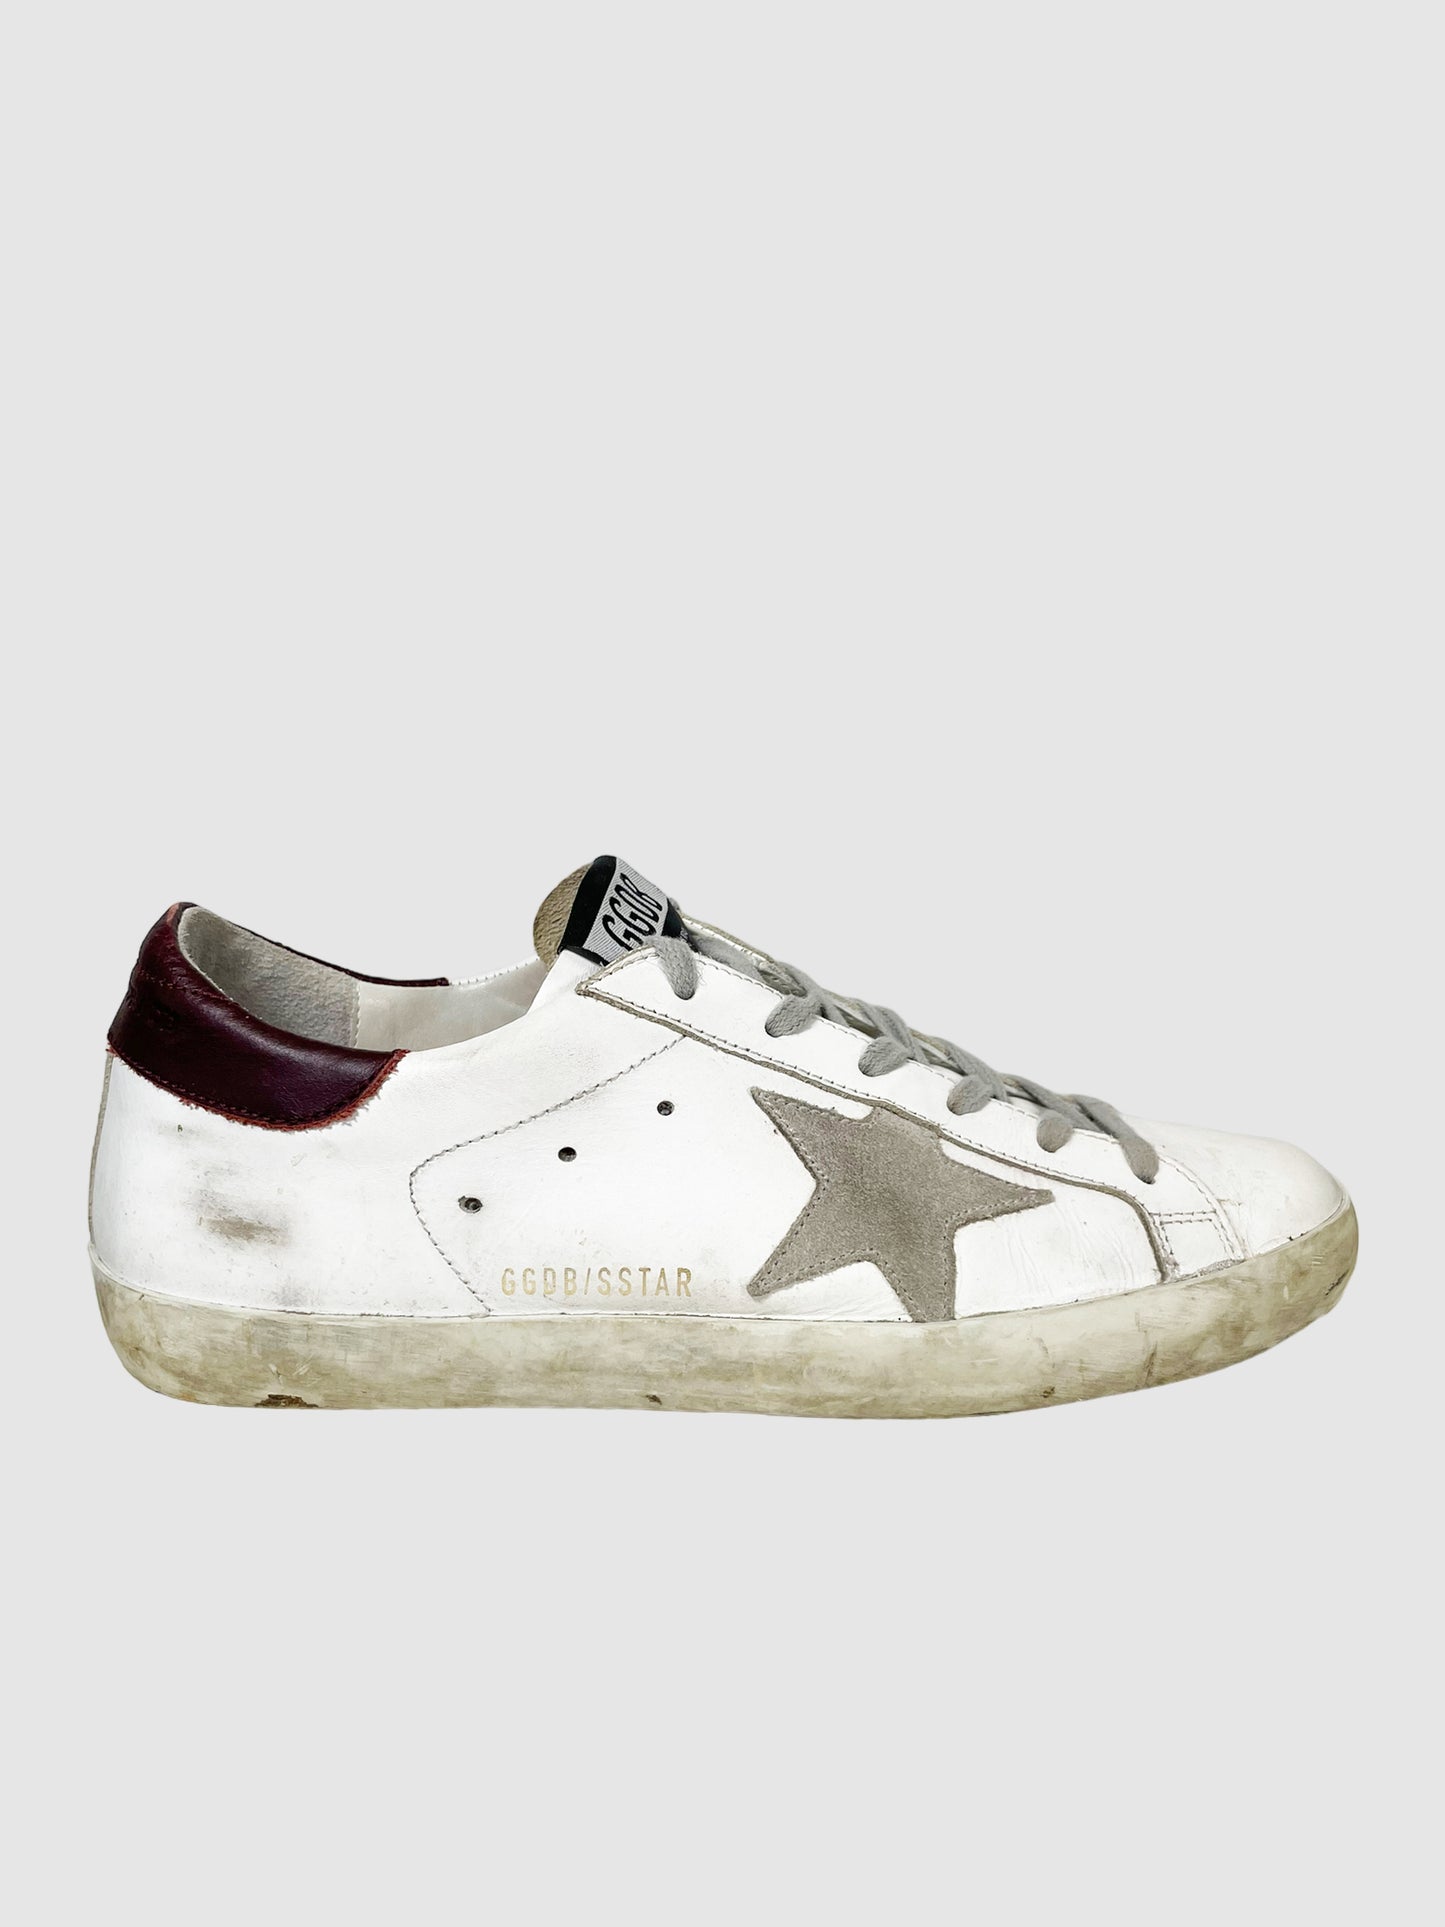 Golden Goose Superstar Sneakers - Size 9